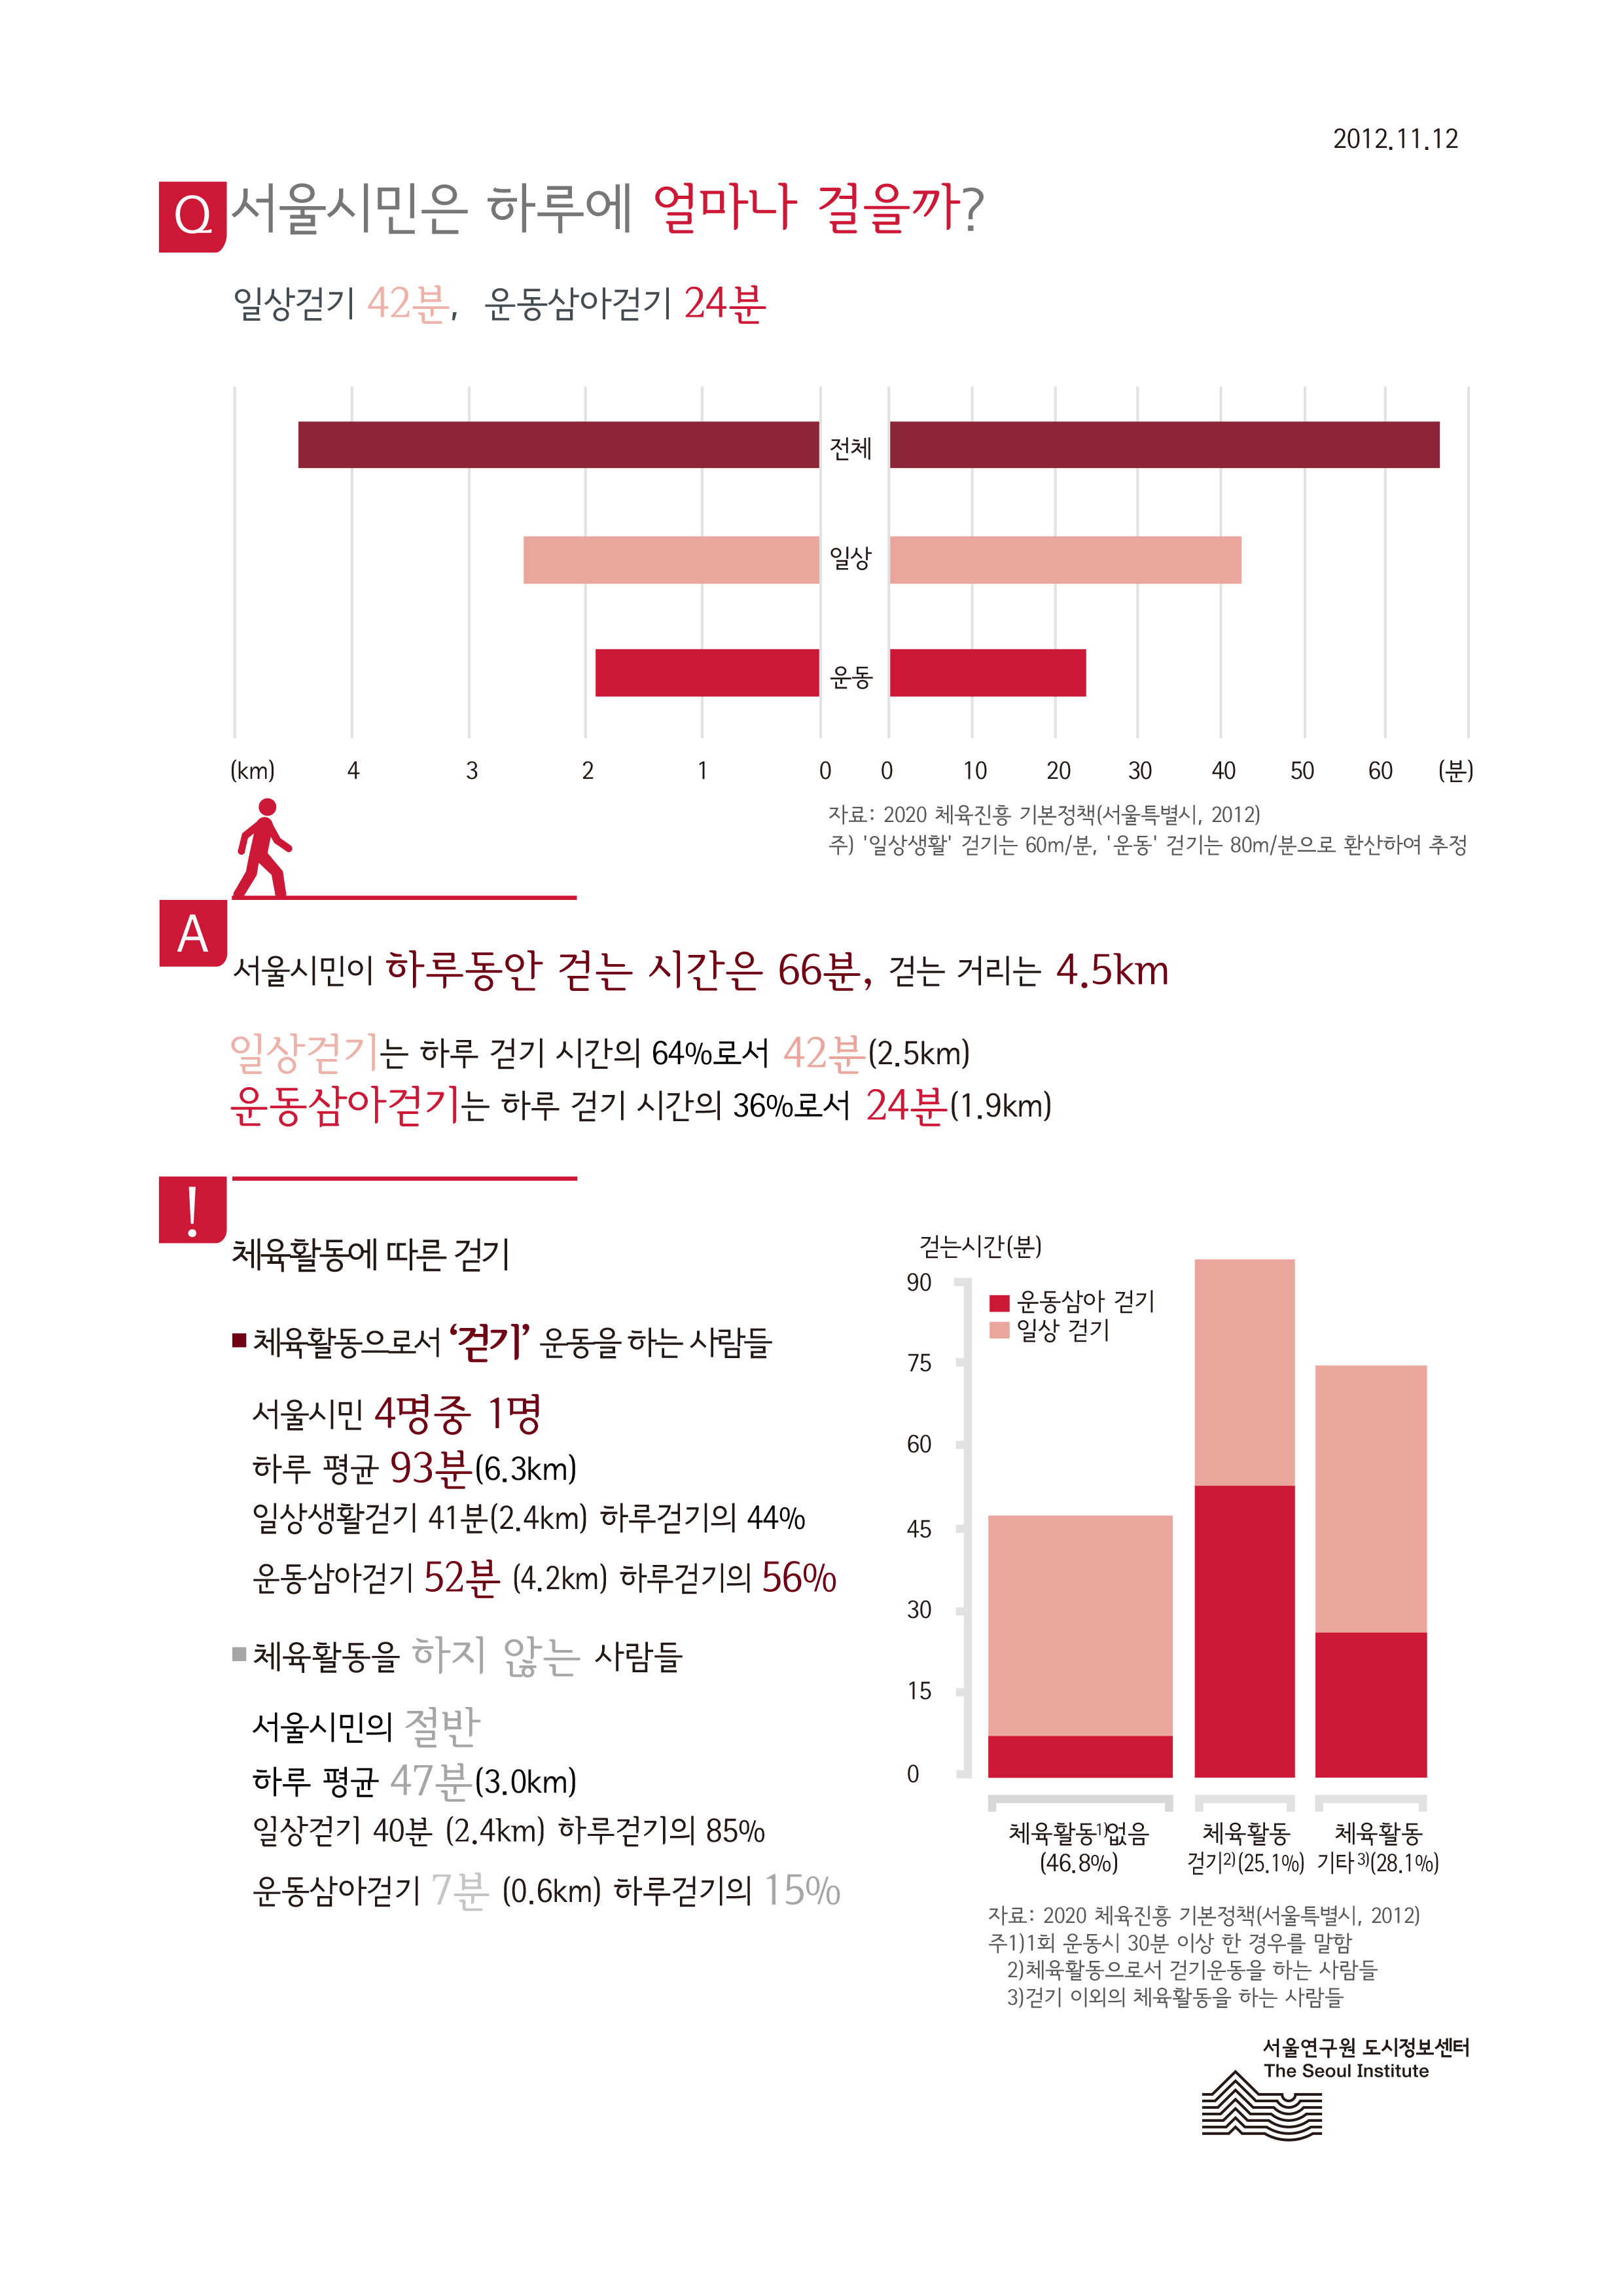 서울시민은 하루에 얼마나 걸을까? 서울인포그래픽스 제7호 2012년 11월 12일 일상걷기 42분, 운동삼아걷기 24분으로 정리될 수 있습니다. 인포그래픽으로 제공되는 그래픽은 하단에 표로 자세히 제공됩니다.